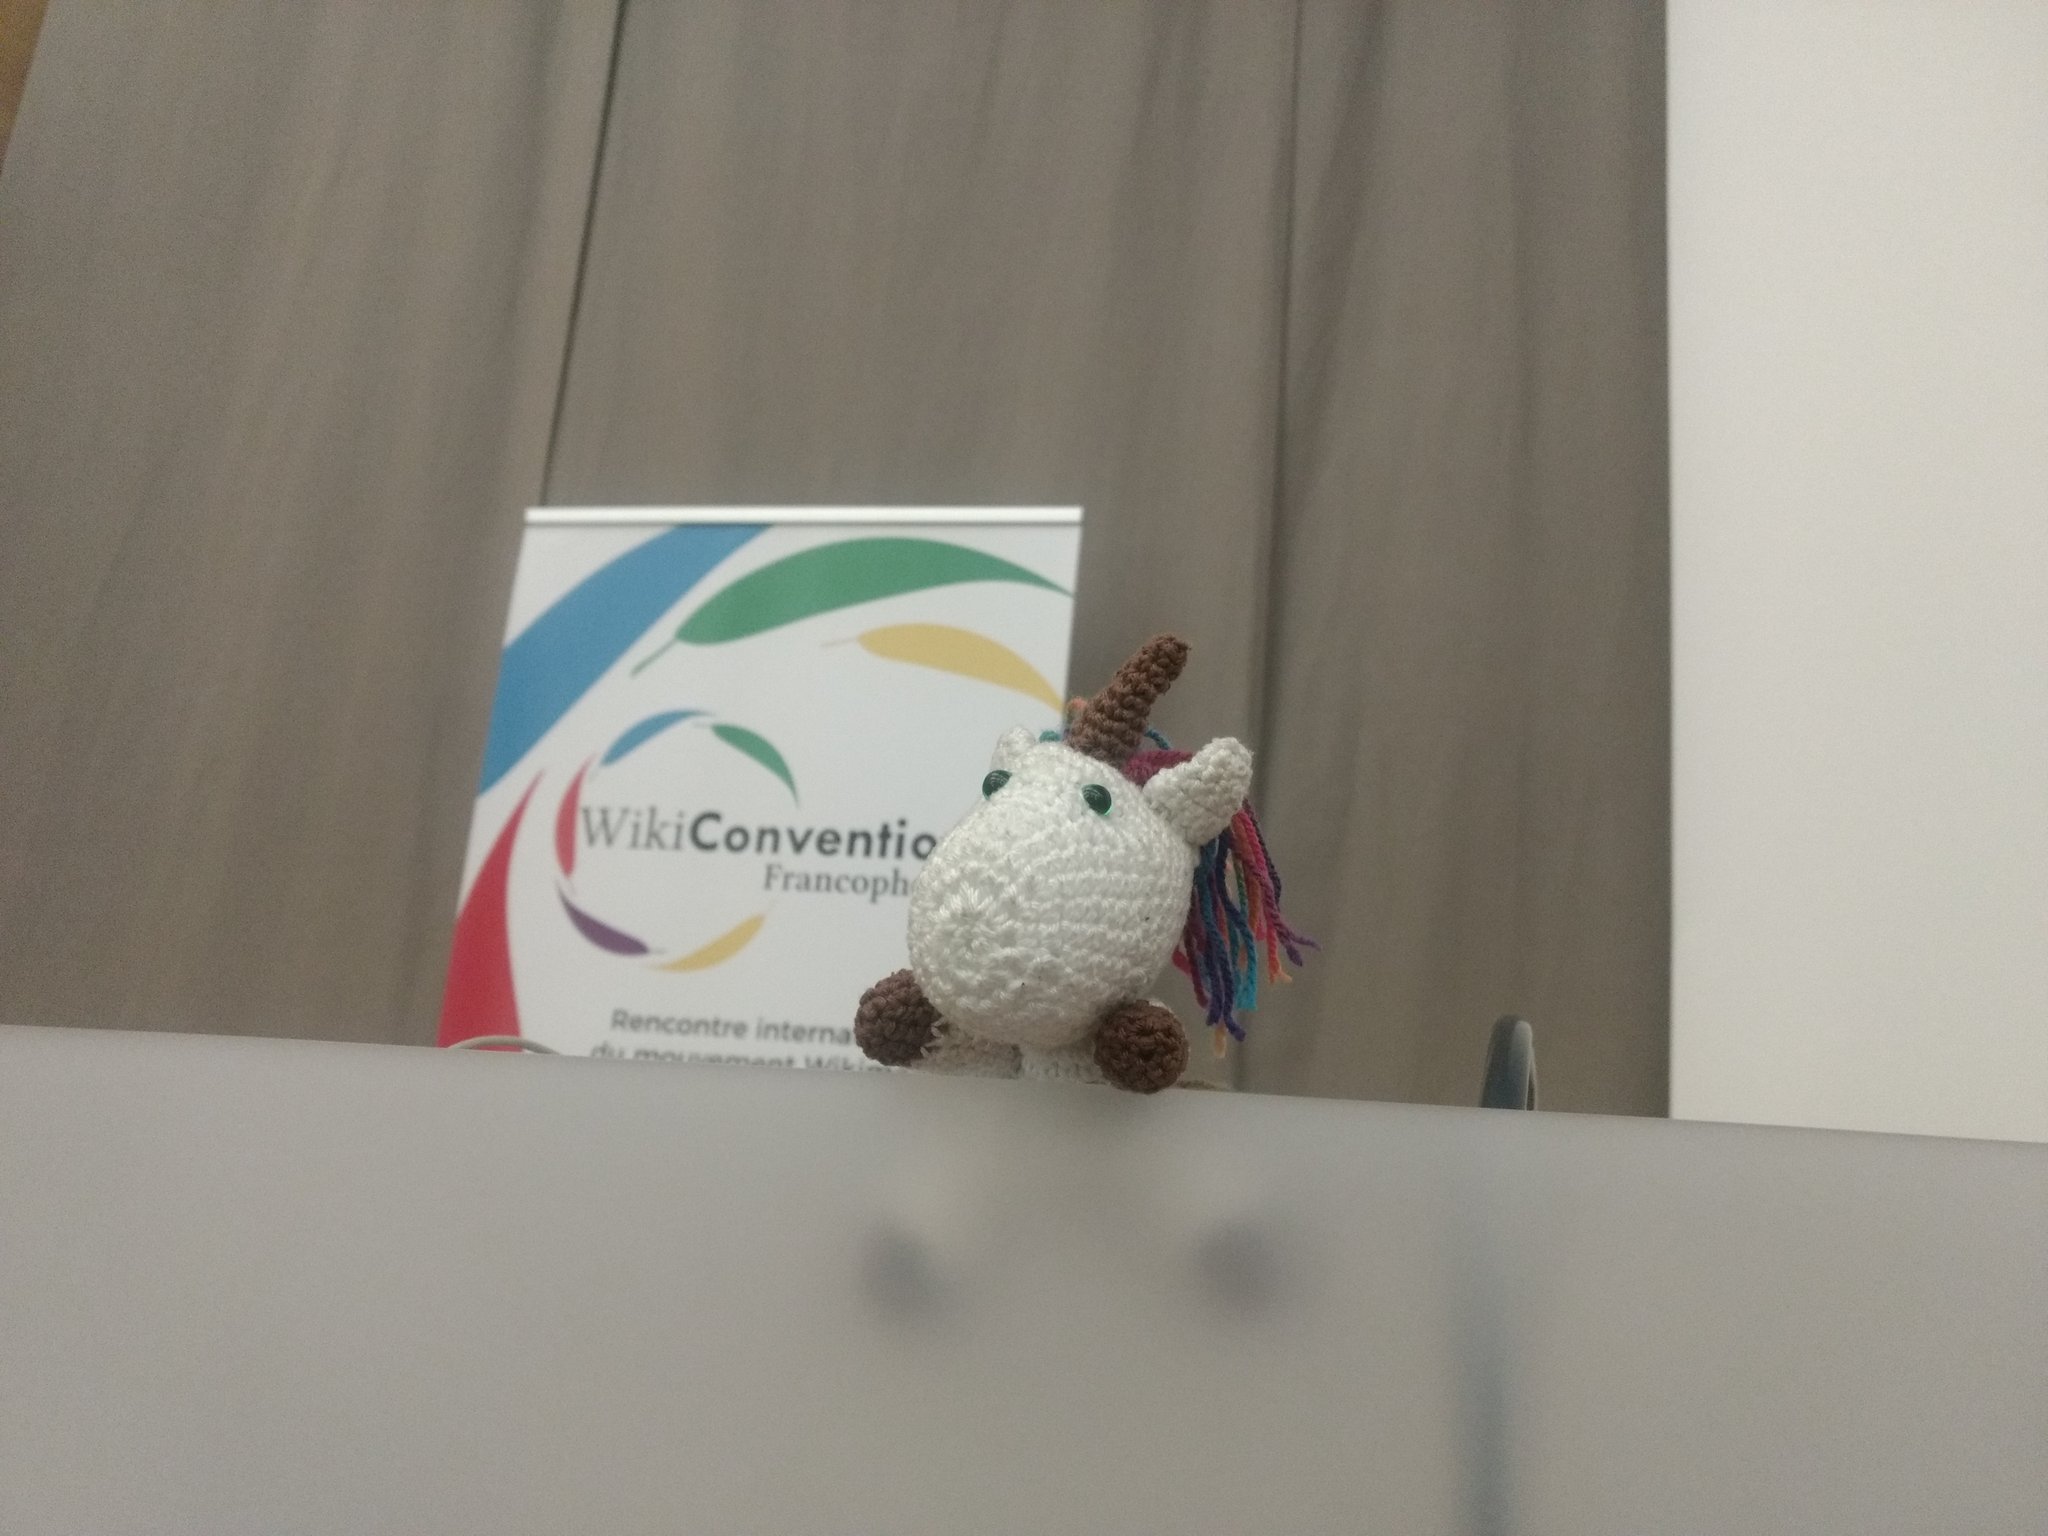 Peluche de licorne blanche au crochet sur un podium de salle de conférence. Derrière elle un dérouleur affiche « Wikiconvention francophone ».